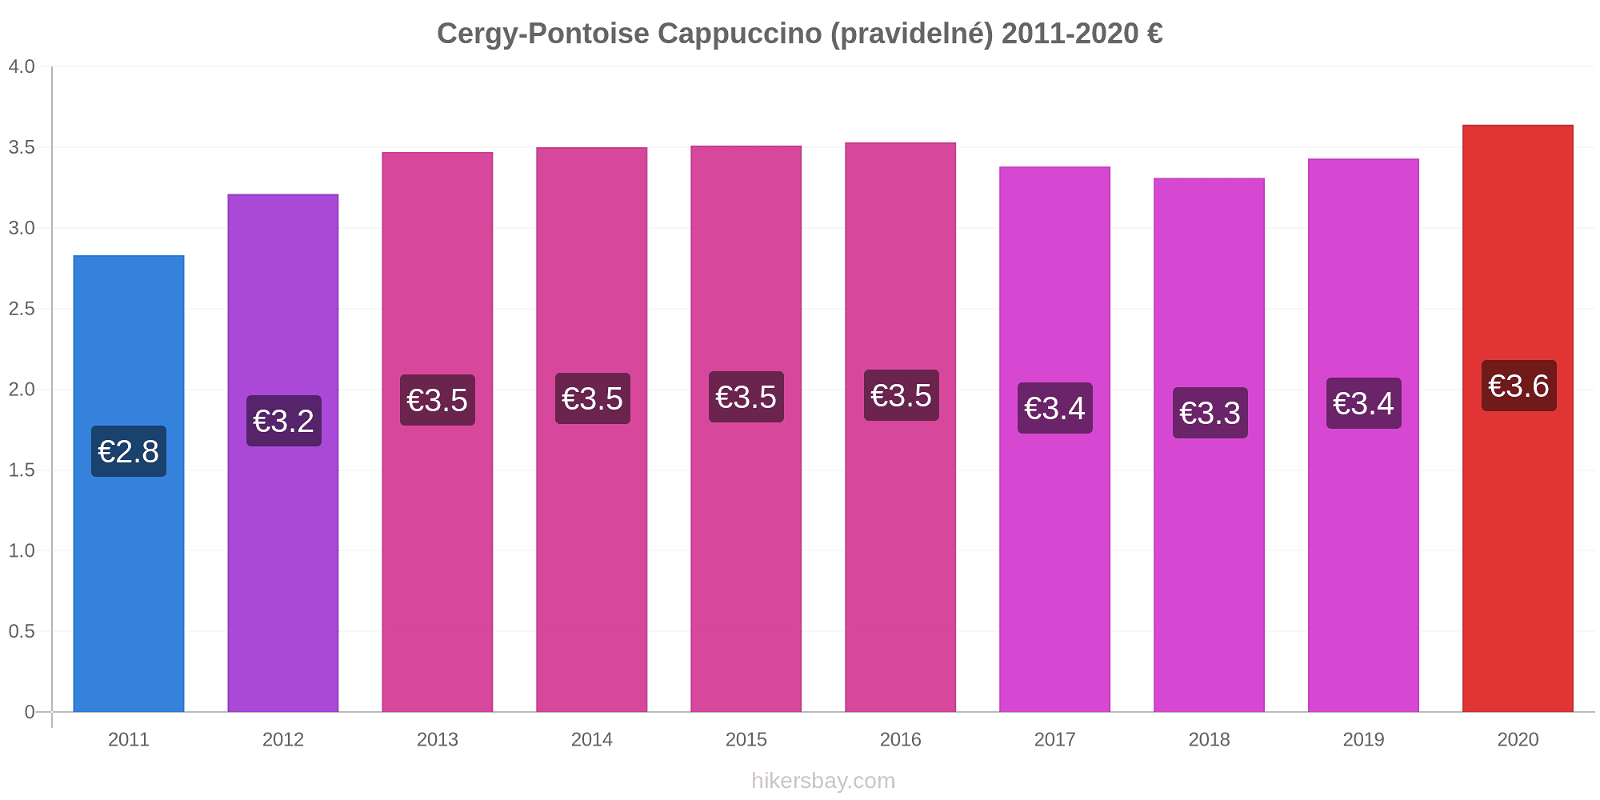 Cergy-Pontoise změny cen Cappuccino (pravidelné) hikersbay.com